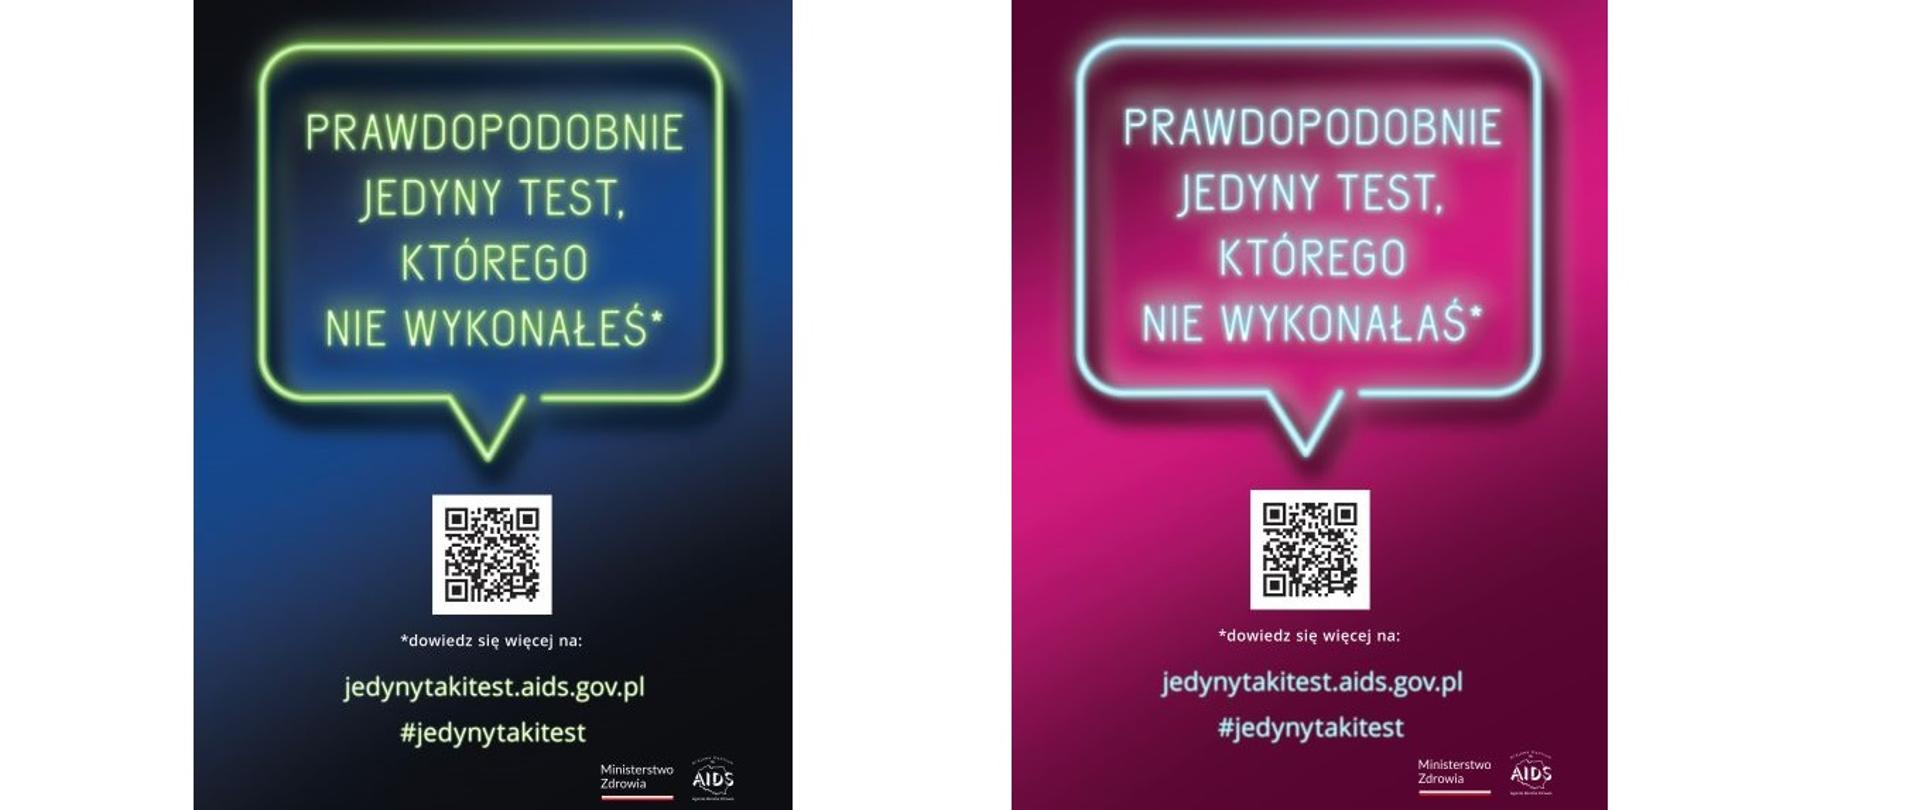 Prawdopodobnie jedyny taki test którego nie wykonałeś więcej informacji jedynytakitest.aids.gov.pl